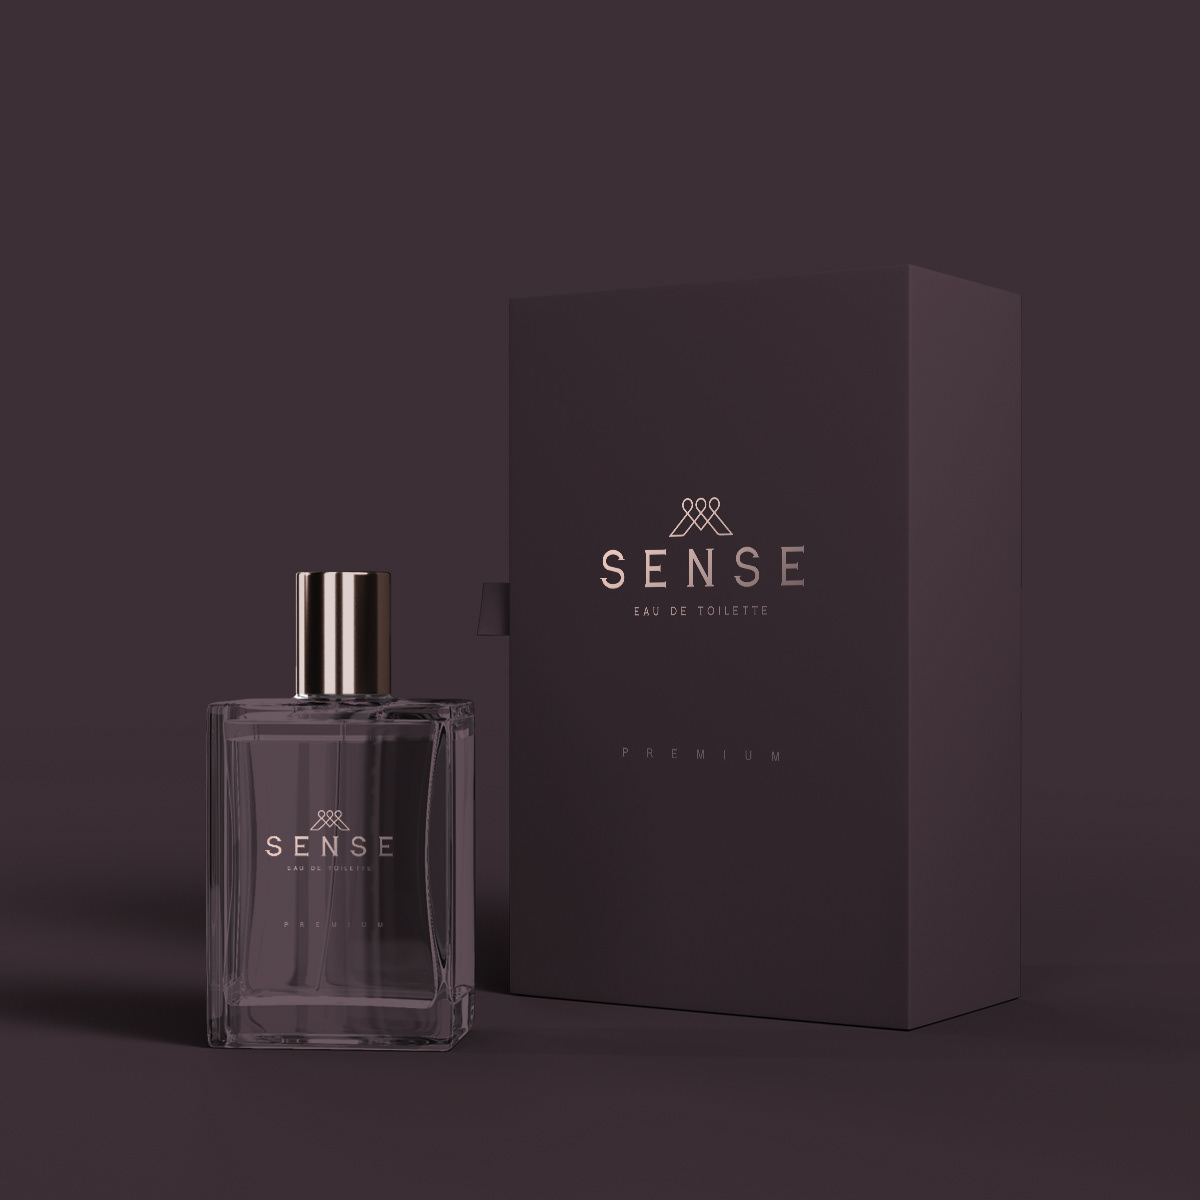 Luxury-perfume-packaging-design-for-Sense-Eau-De-Toilette